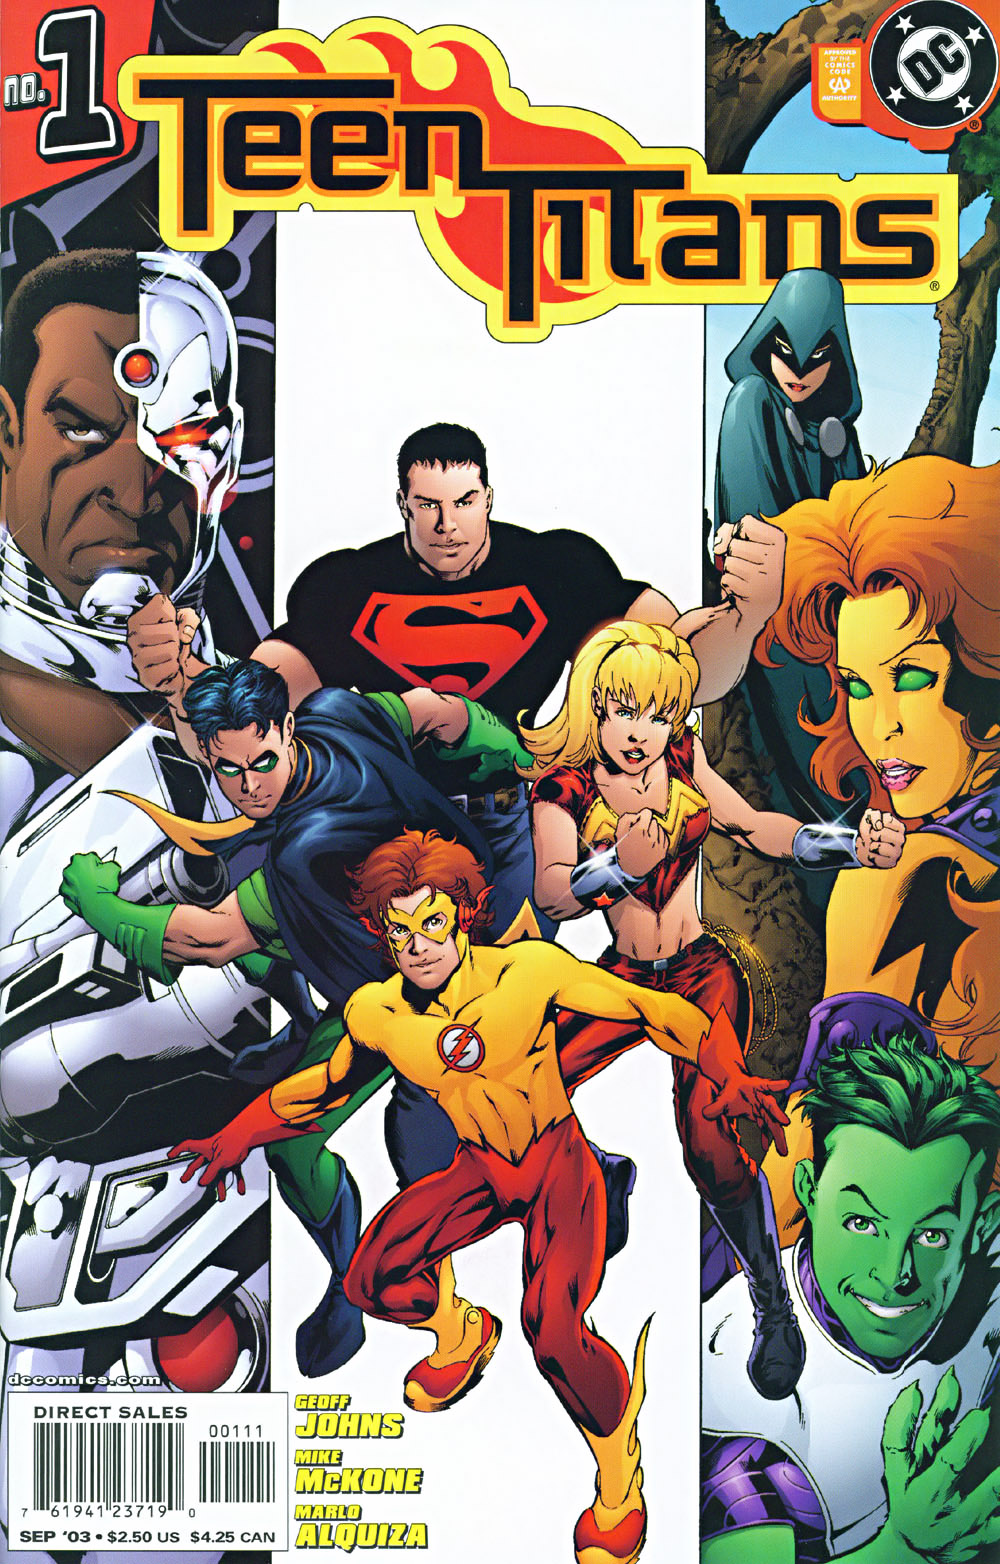 Teen Titans Vol. 3 #1A